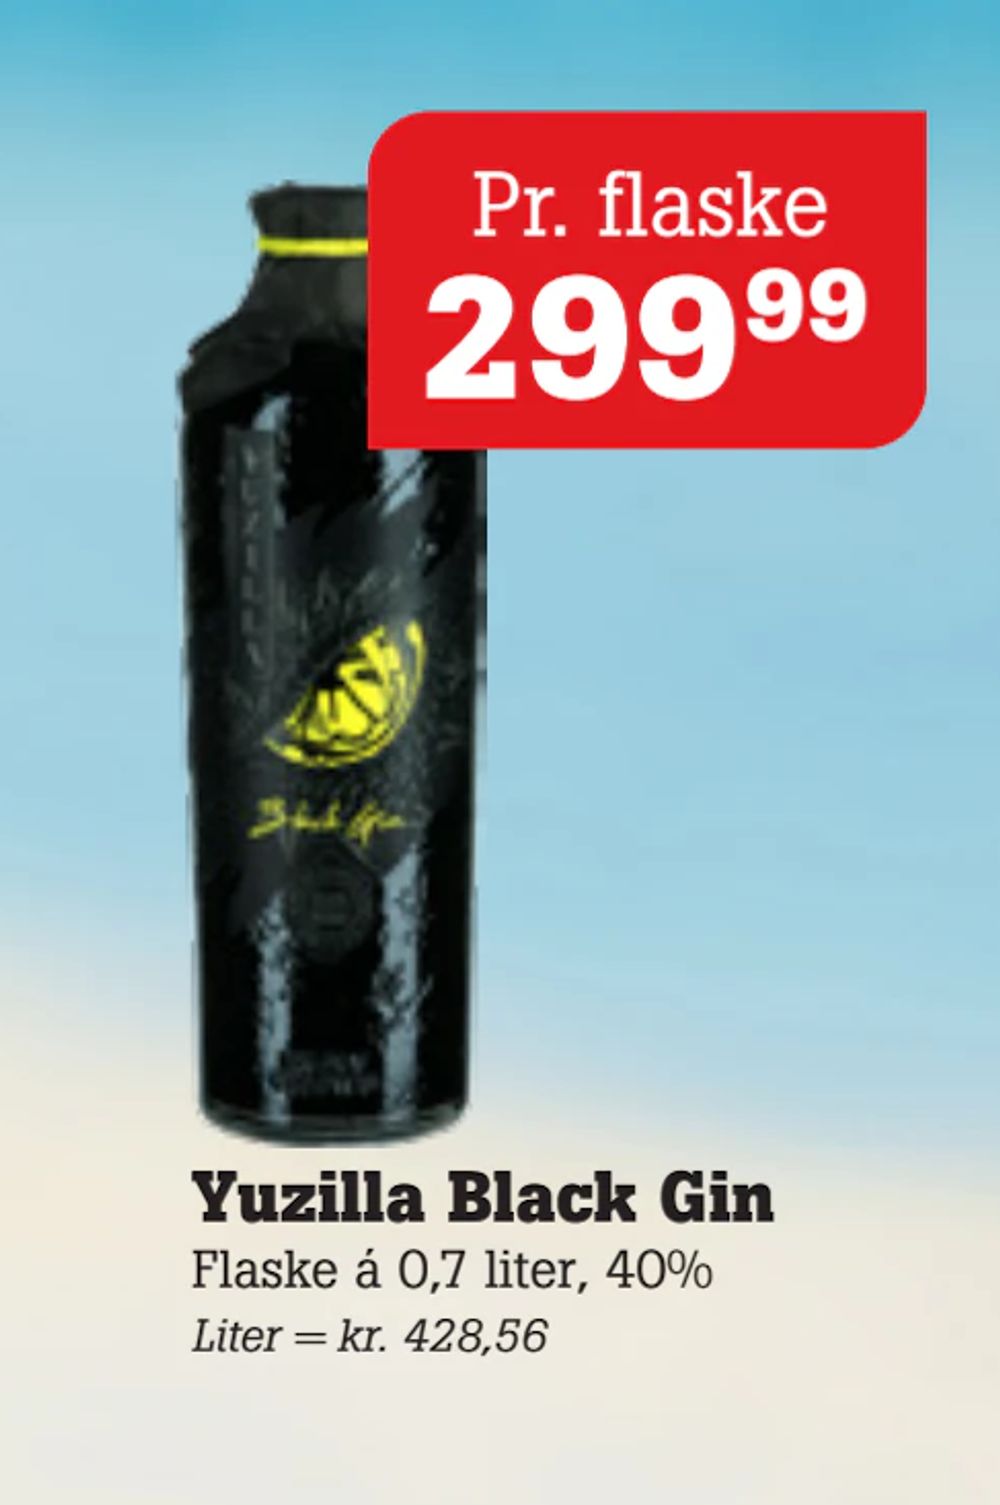 Tilbud på Yuzilla Black Gin fra Poetzsch Padborg til 299,99 kr.